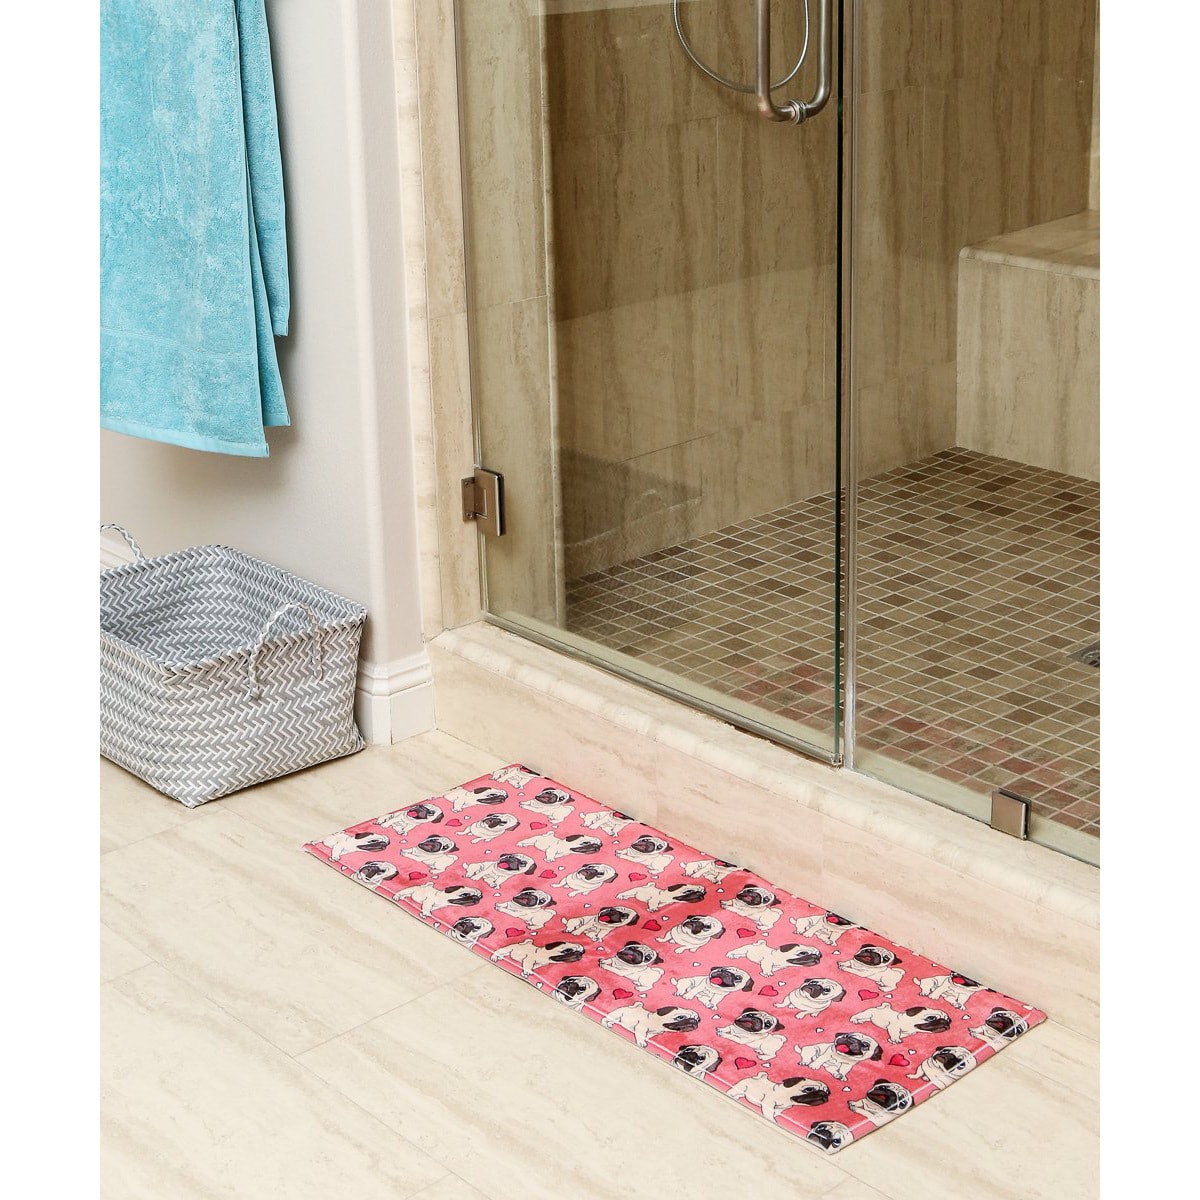 Petorama 超長巴哥犬長方形浴室吸水防滑腳墊 #粉紅色多印花款